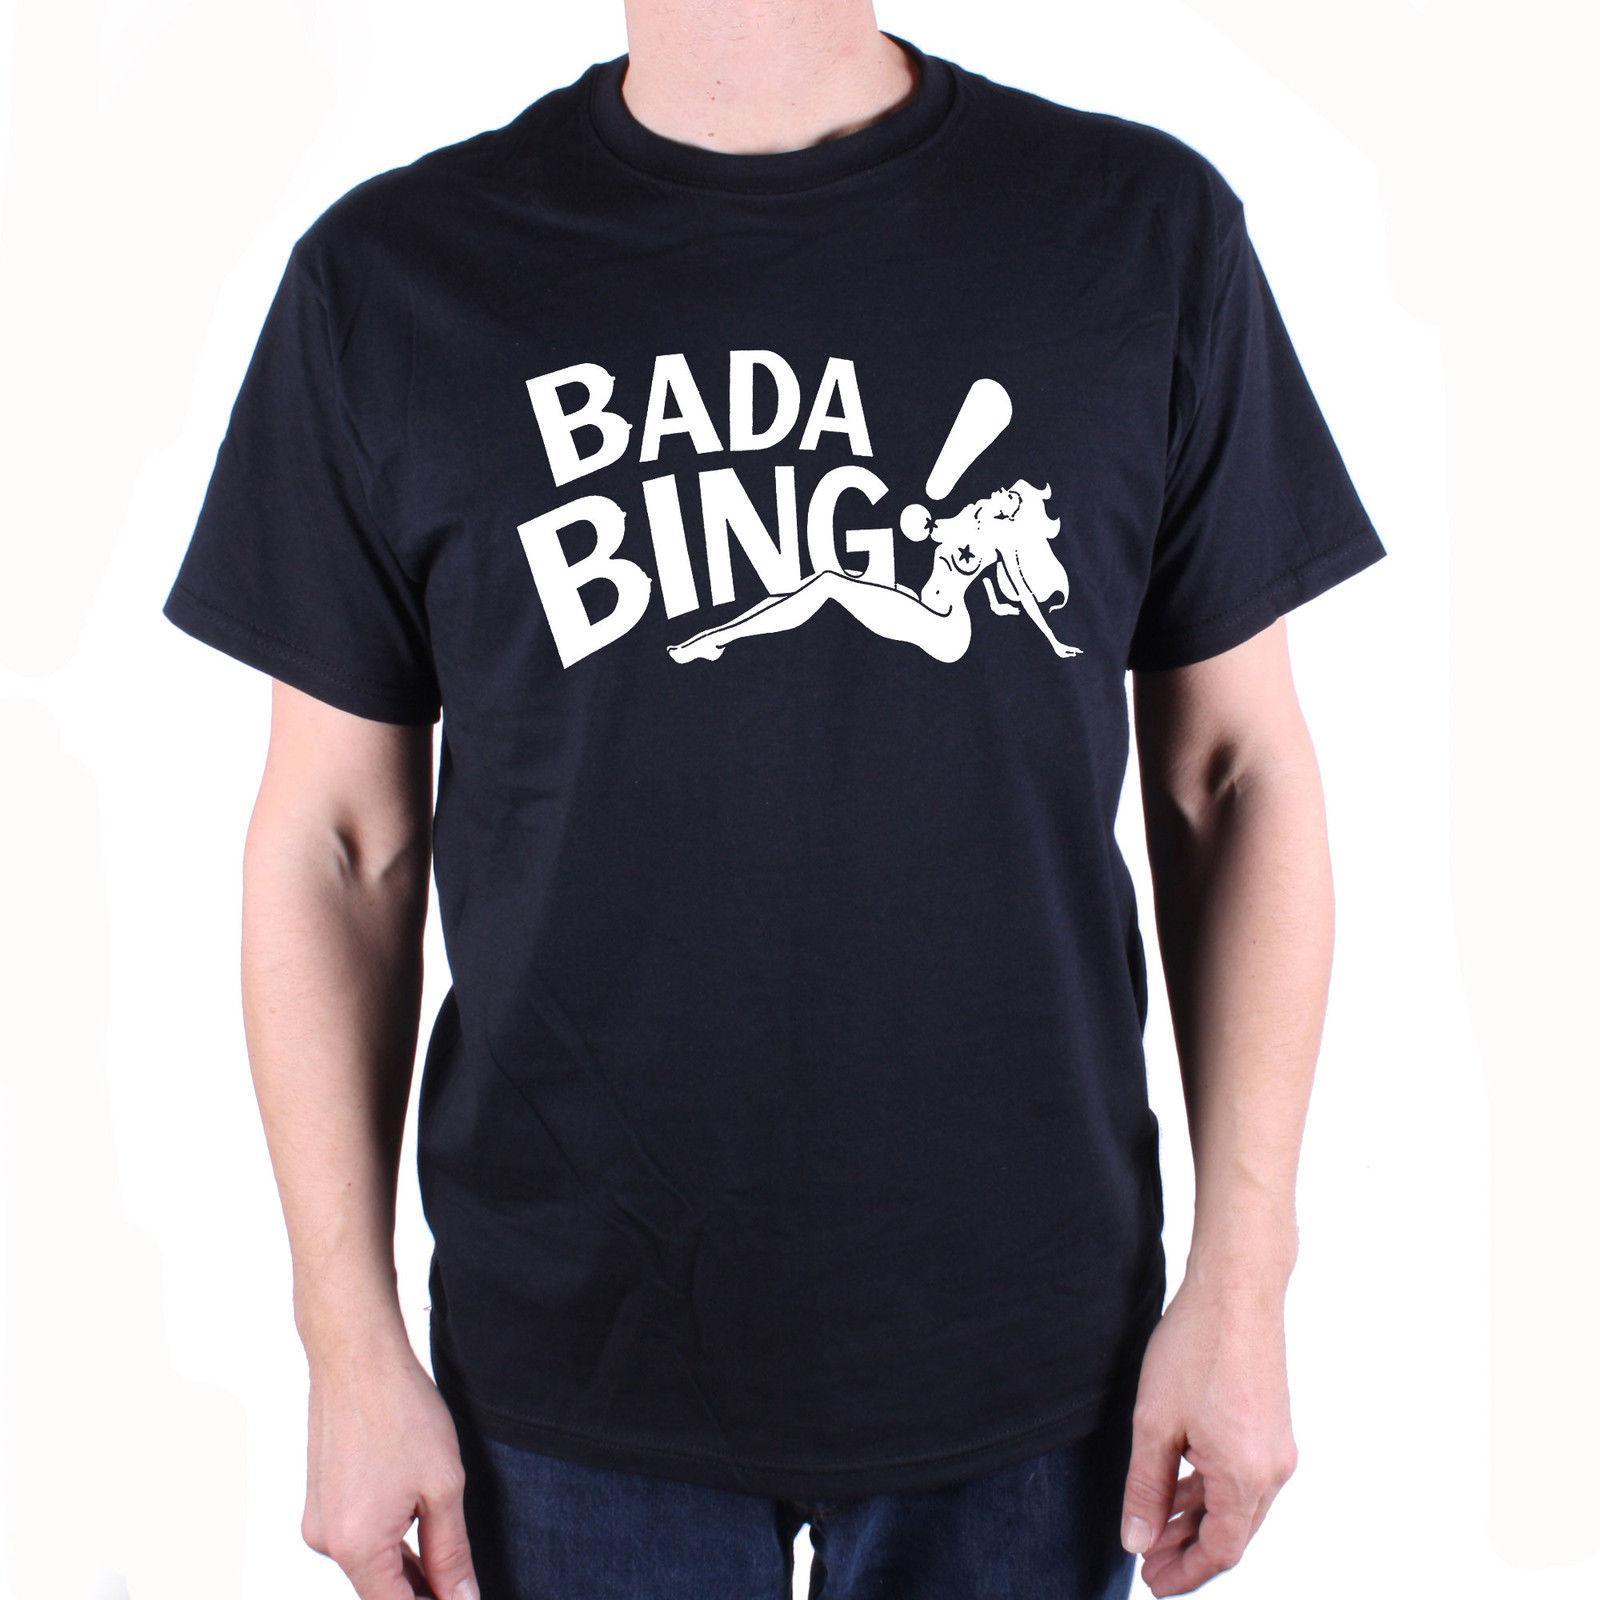 Bada Bing Logo - As Seen In The Sopranos T Shirt Bada Bing! Logo Free UK Postage Cult